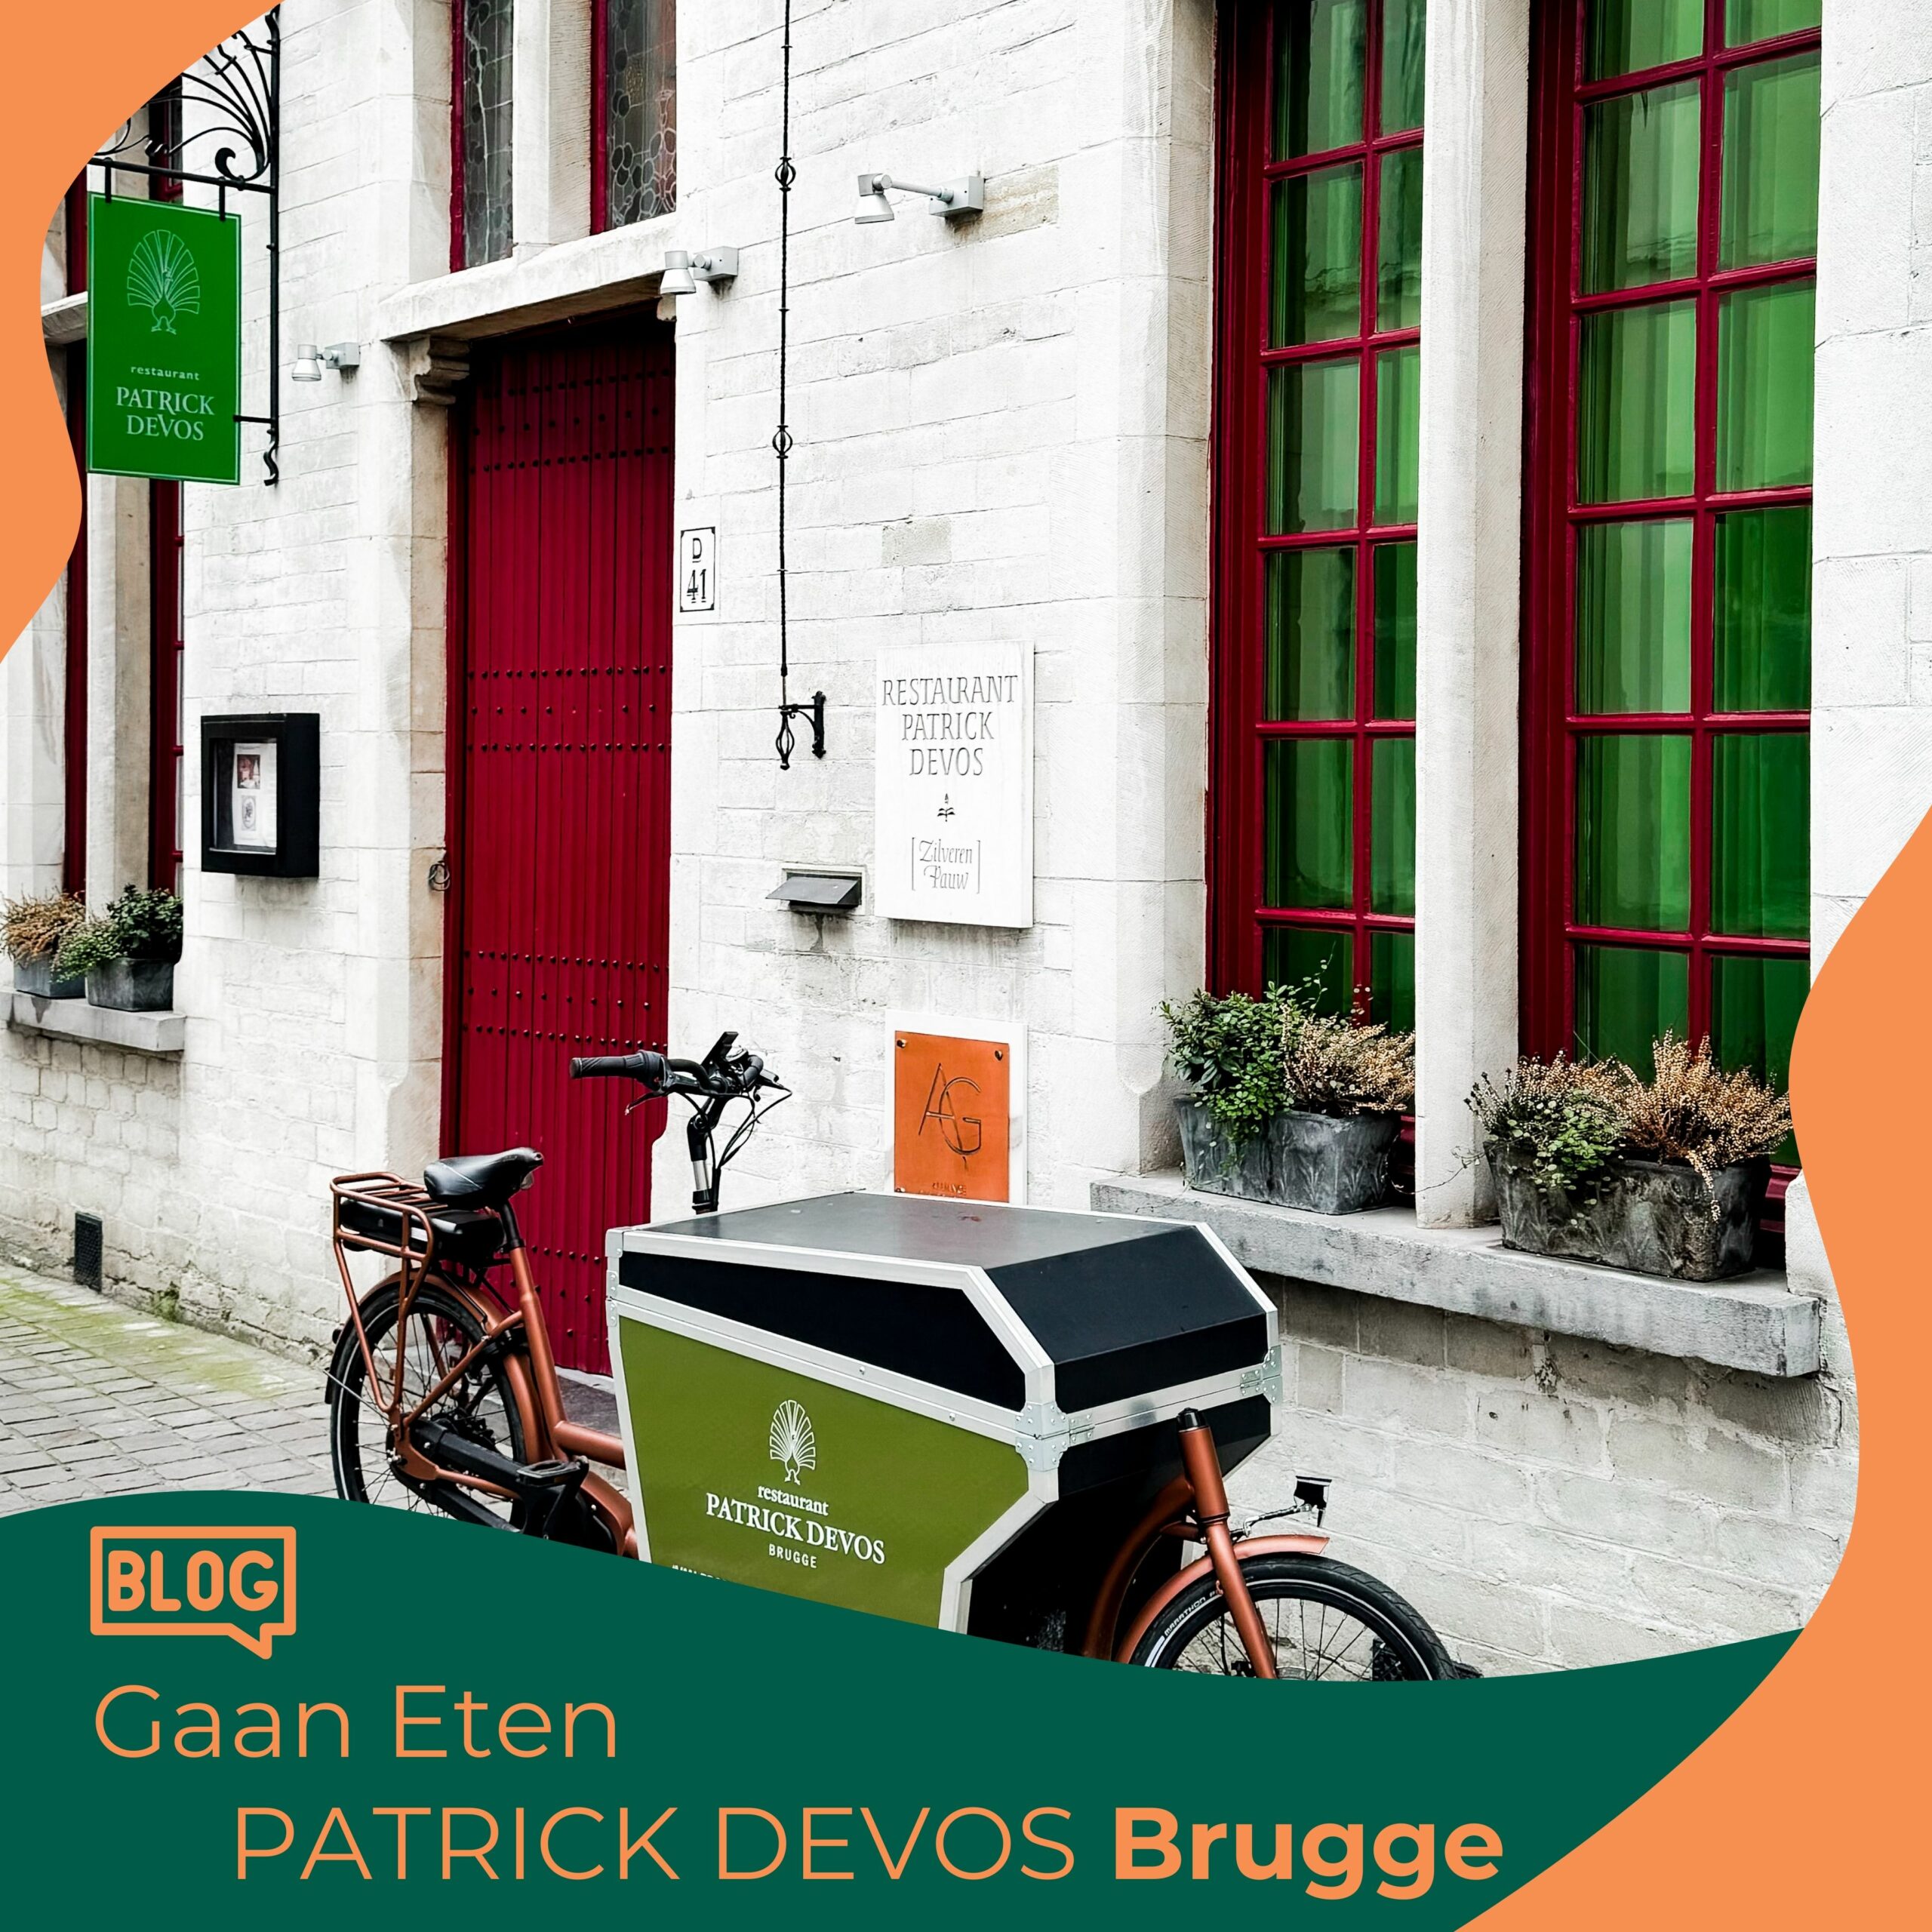 Gaan eten bij Patrick Devos, Brugge